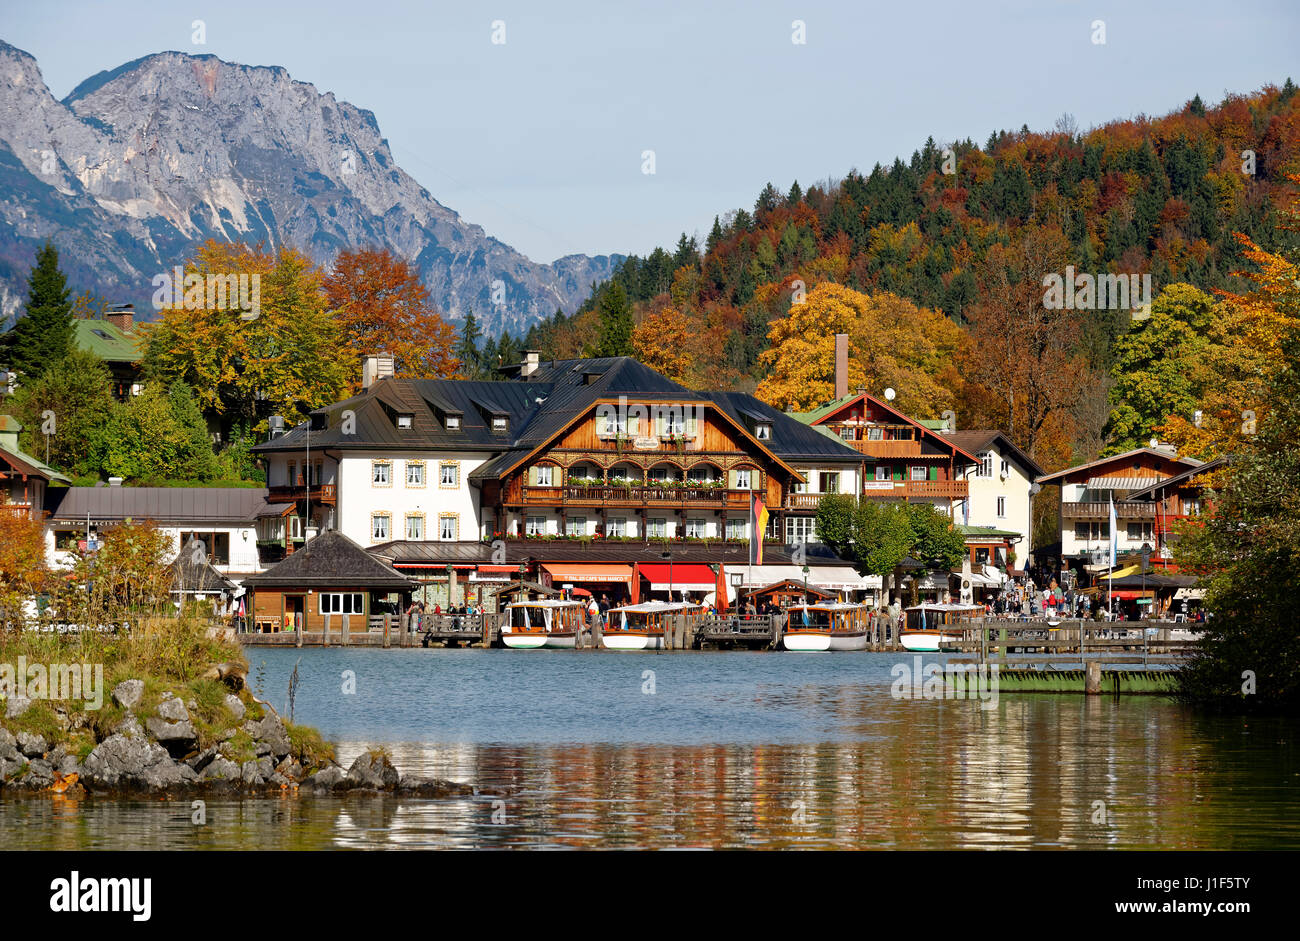 Hotel Schiffmeister, Schönau am Koenigssee, Berchtesgadener Land District, Upper Bavaria, Bavaria, Germany Stock Photo